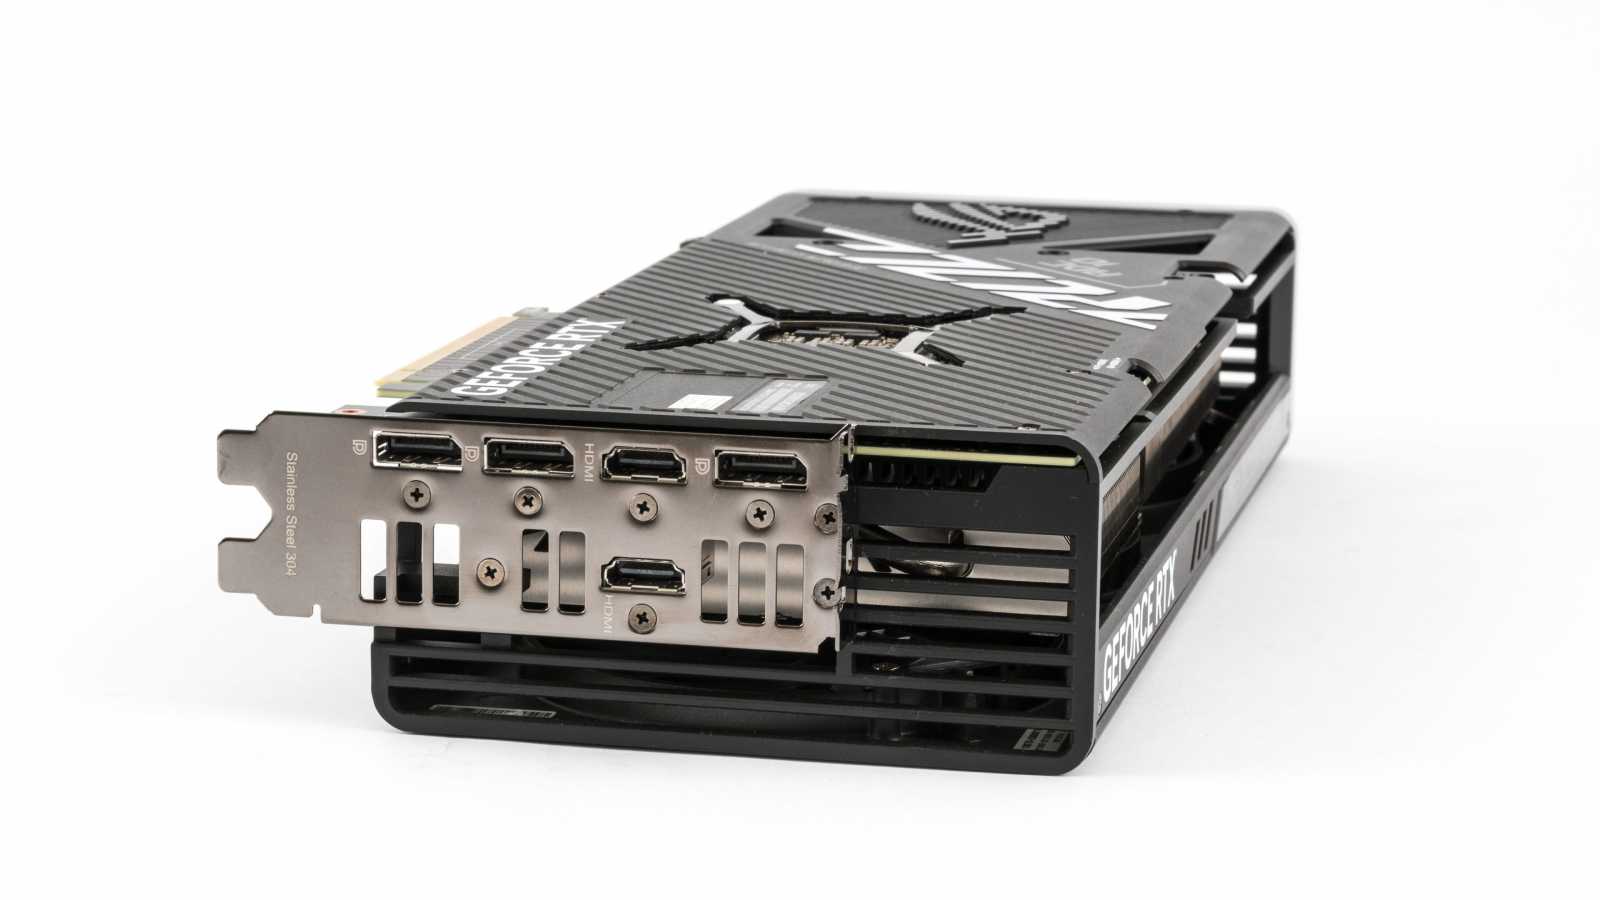 Asus ROG Strix GeForce RTX 4070 Ti OC Ed. O12G: Když vám normální karty nestačí